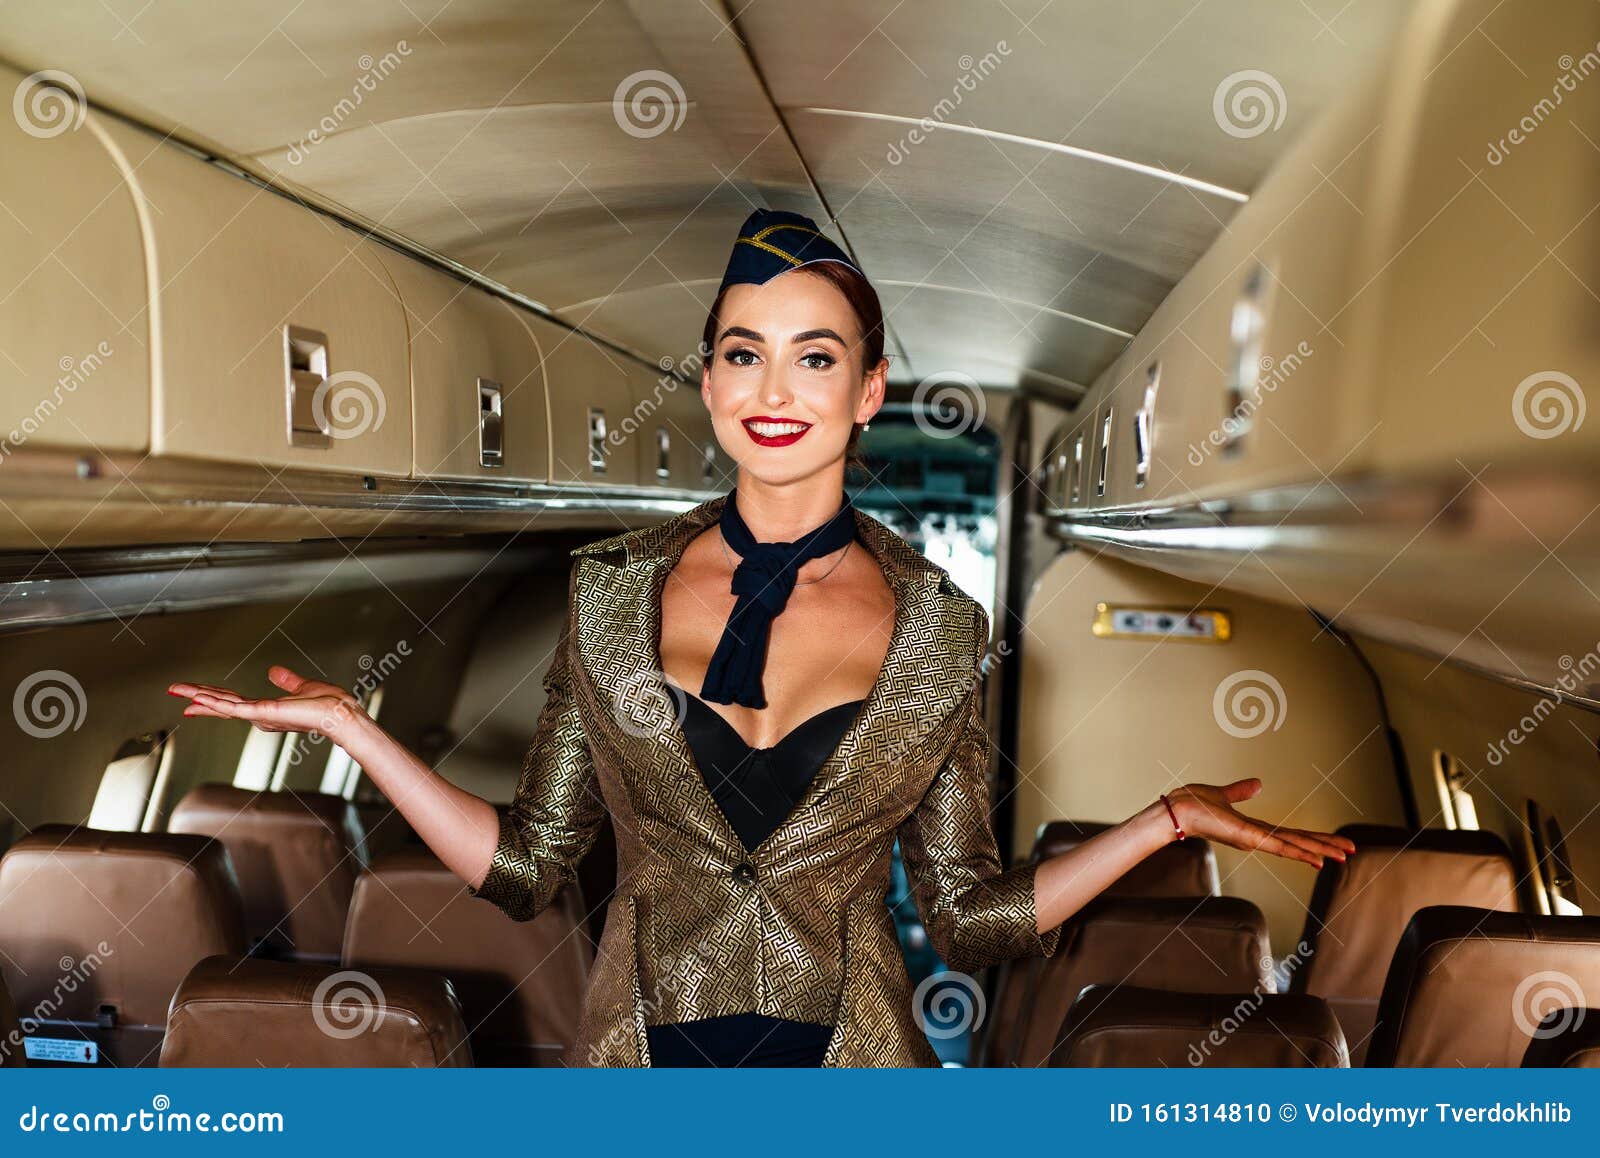 Γυναίκα αεροσυνοδός Γοητευτική αεροσυνοδός Όμορφος αεροσυνοδός σε ένα  αεροπλάνο χαμογελαστός Στολή συνοδηγού Όμορφη Στοκ Εικόνες - εικόνα από  aviations, airlines: 161314810